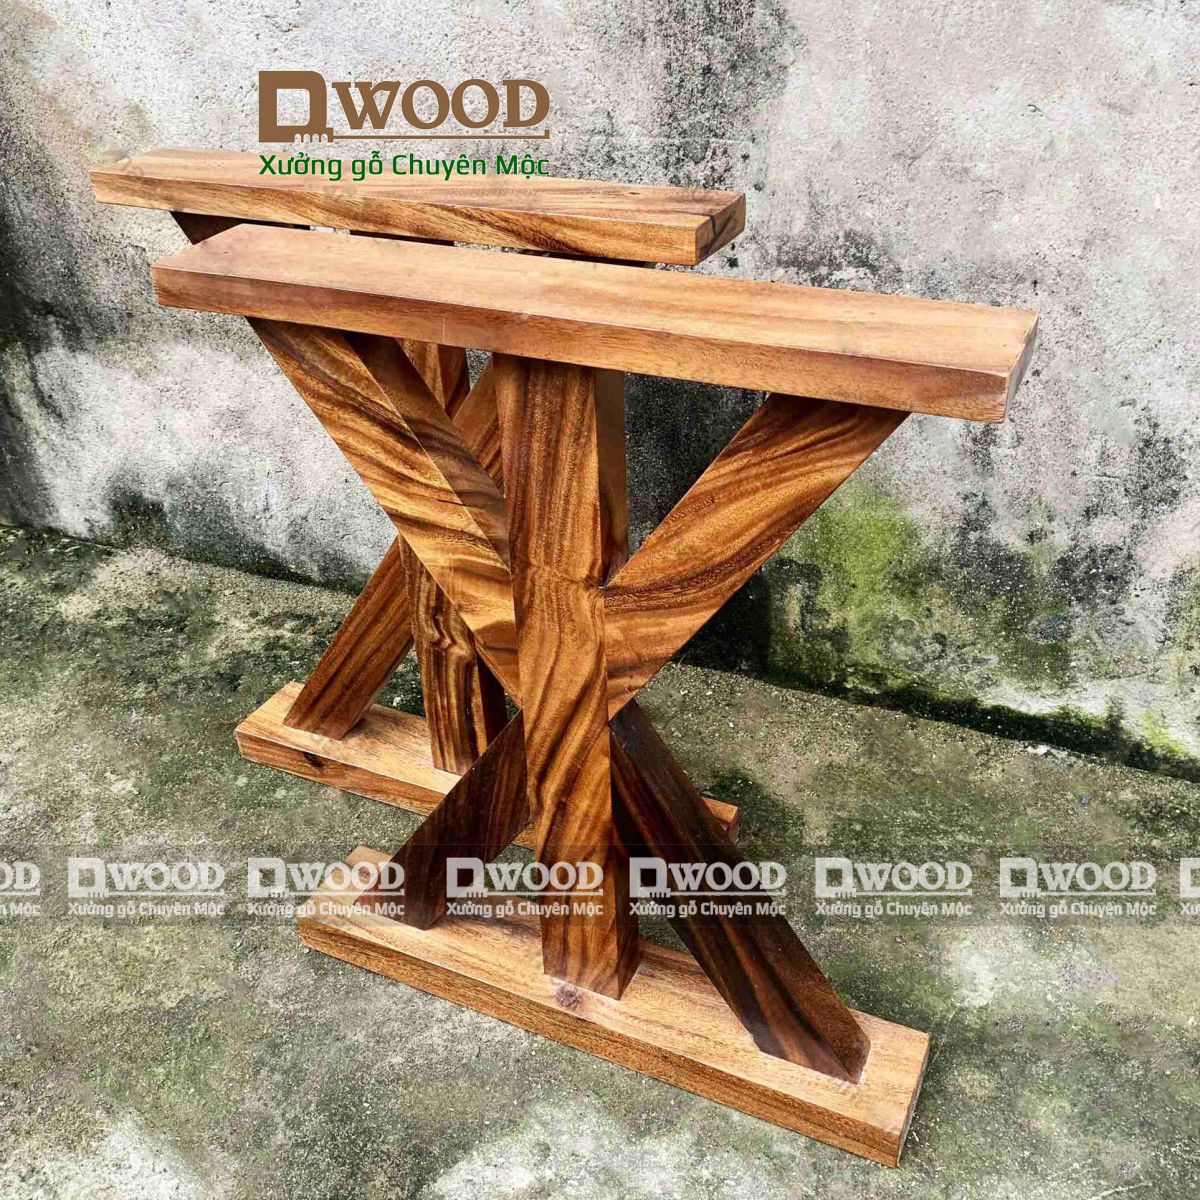 Chân bàn Dwood chữ X gỗ me tây